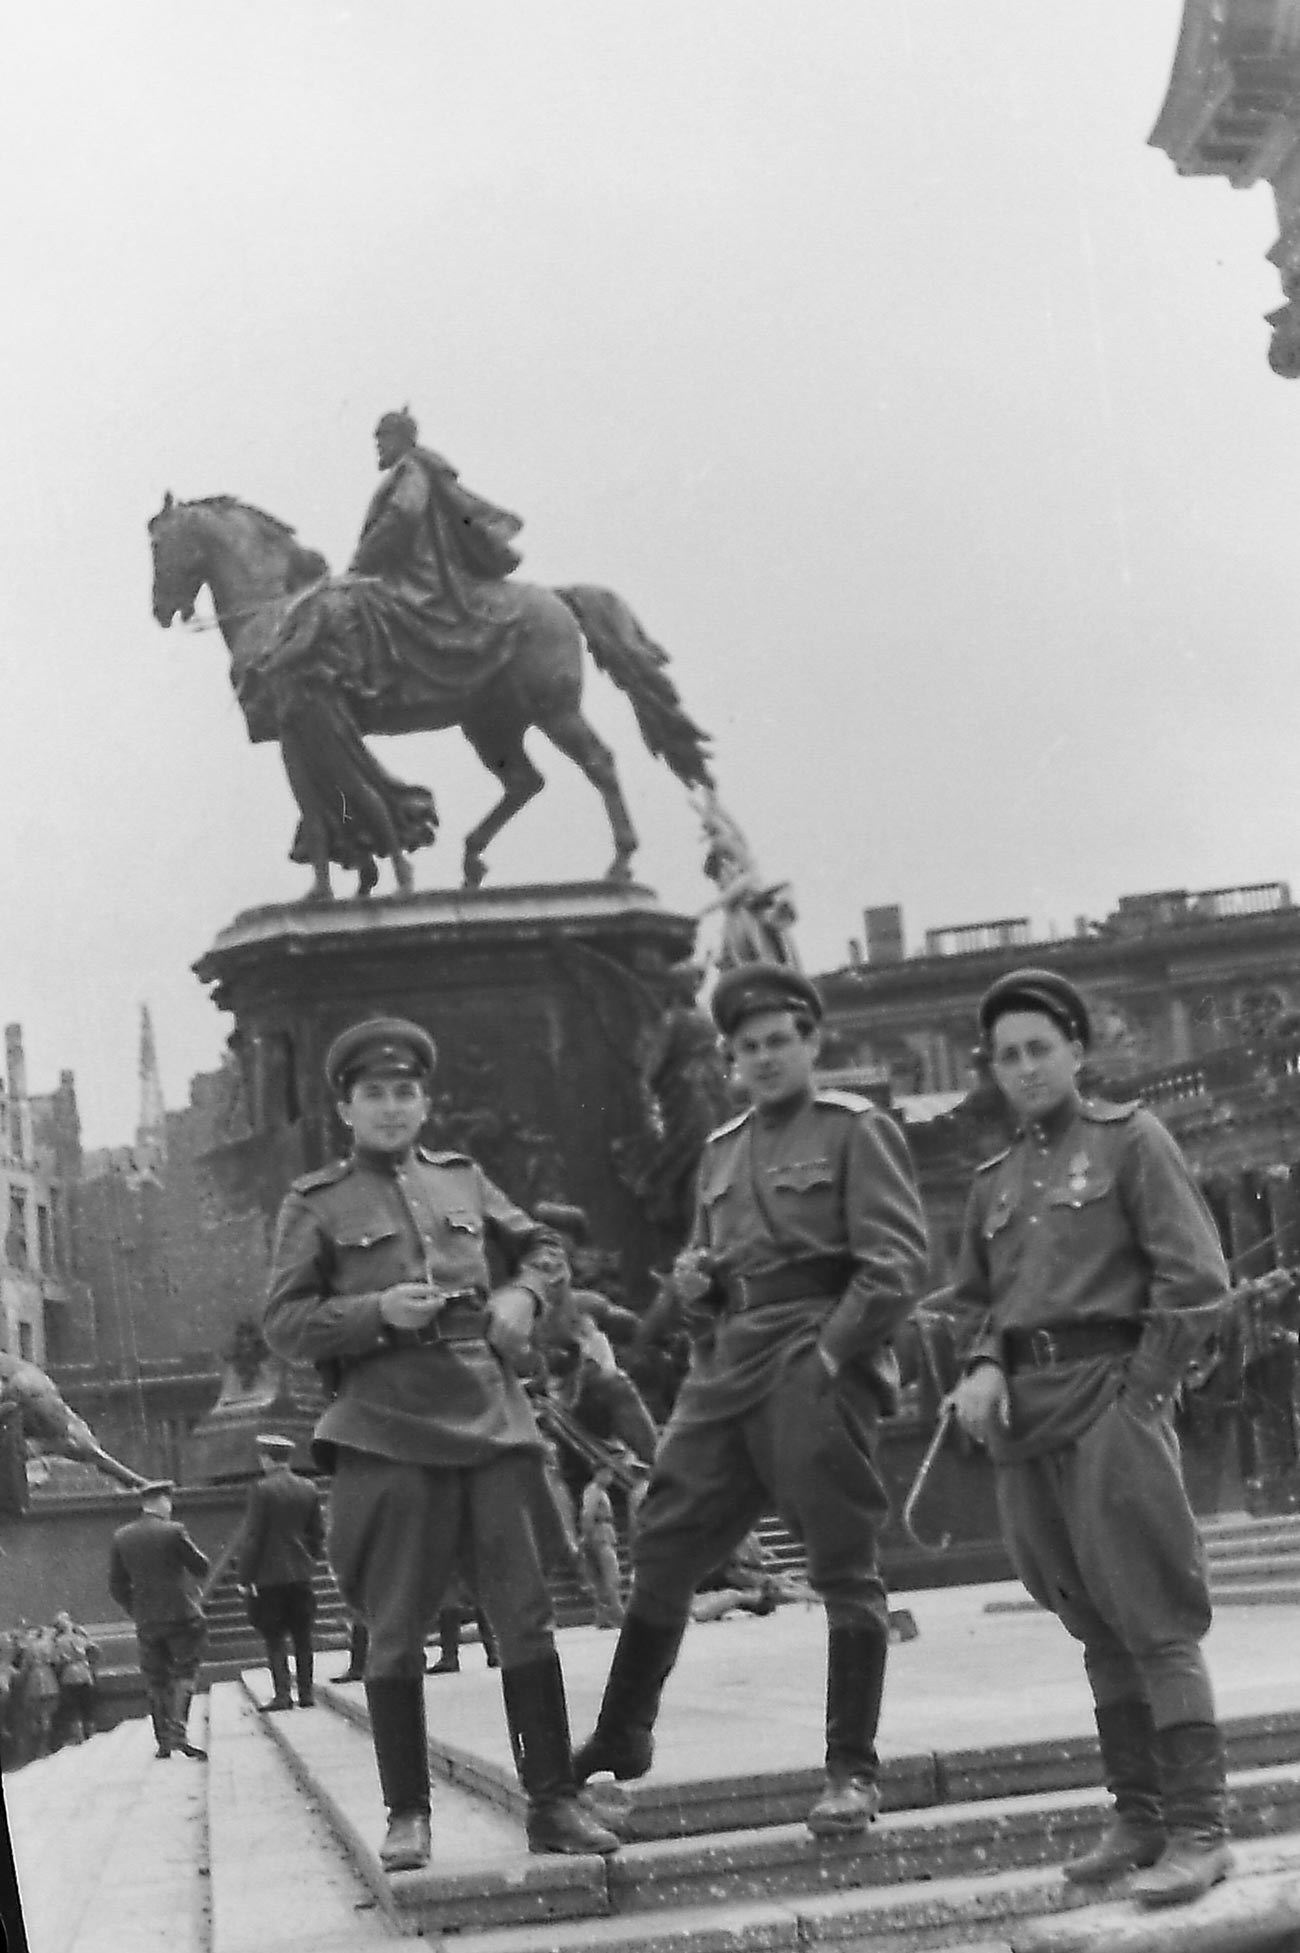 El director León Saakov (en el centro) con los reporteros cinematográficos de guerra Iliá Arons y Mijaíl Poselski. Berlín, junio de 1945

